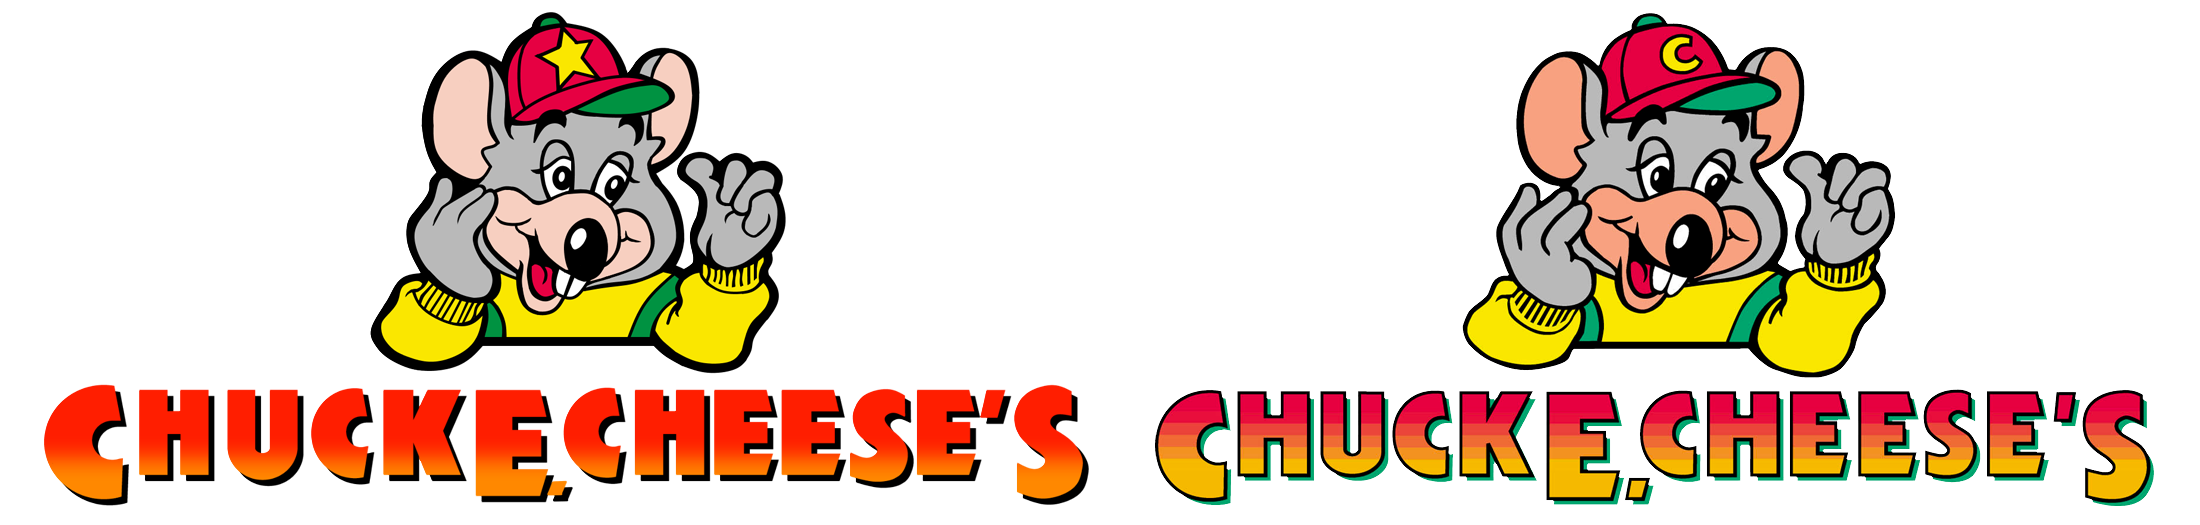 Company Logos History Of Chuck E Cheese